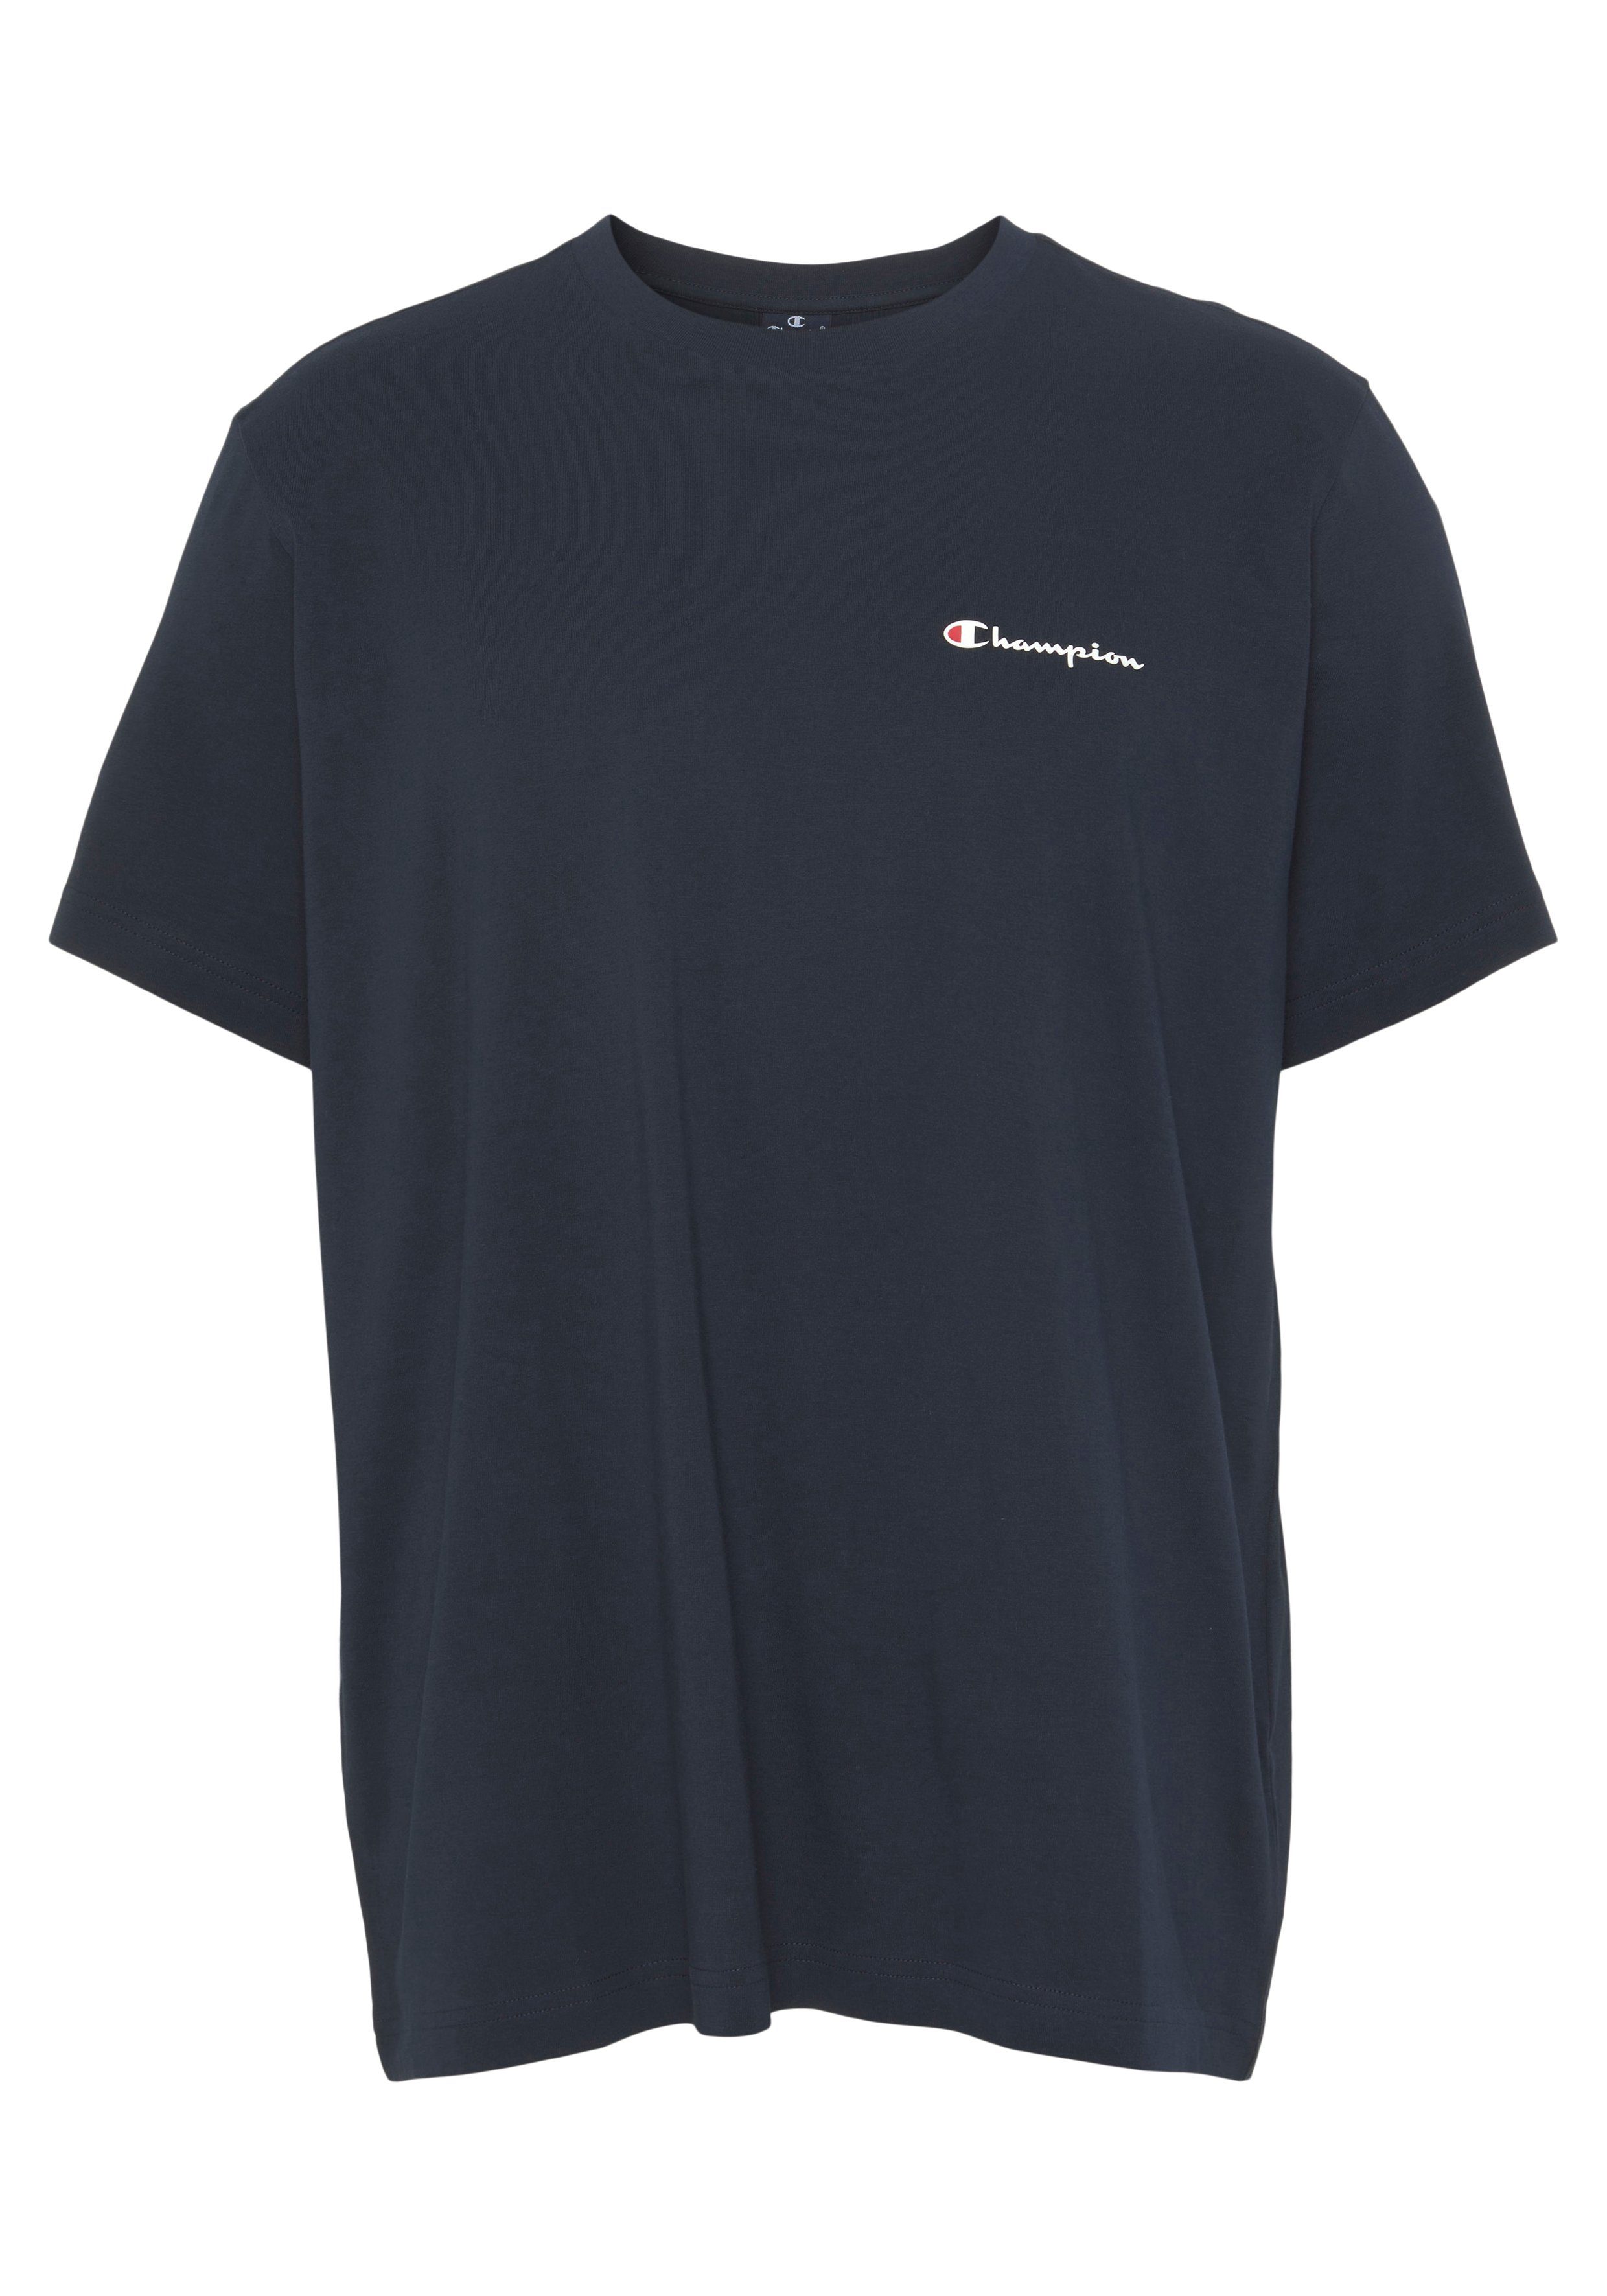 Champion T-Shirt Classic Perfekt T-Shirt als Kombiteil oder den stylishes Crewneck als small für Einzelstück auch logo